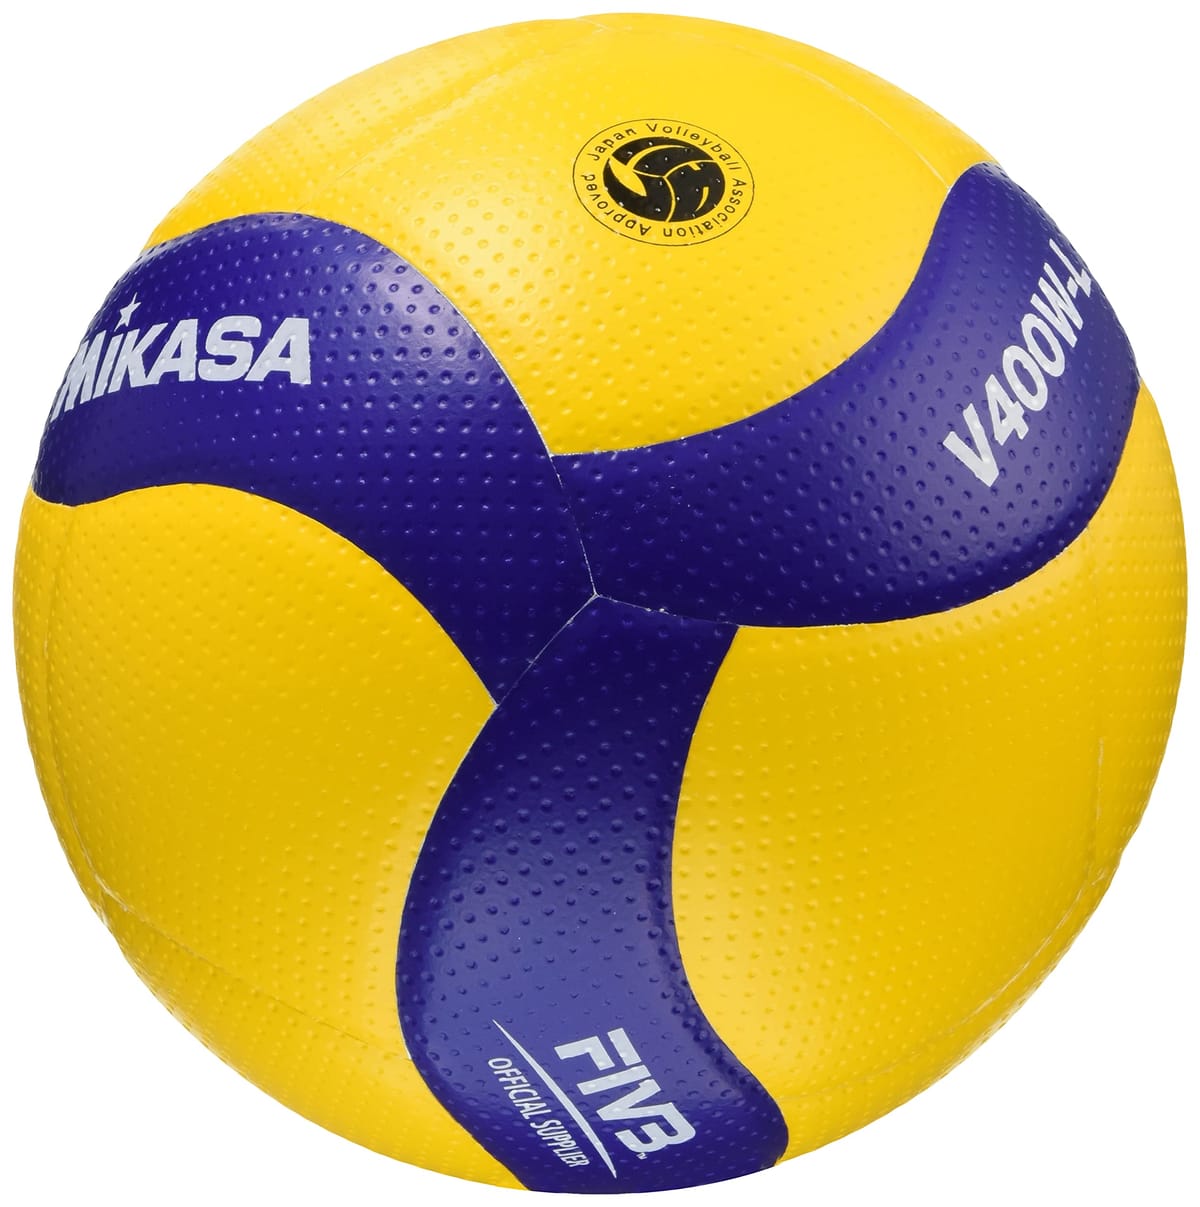 ミカサ(MIKASA) バレーボール 軽量4号 日本バレーボール協会検定球 小学生用 イエロー/ブルー V400W-L 推奨内圧0.3(kgf/㎠) 1